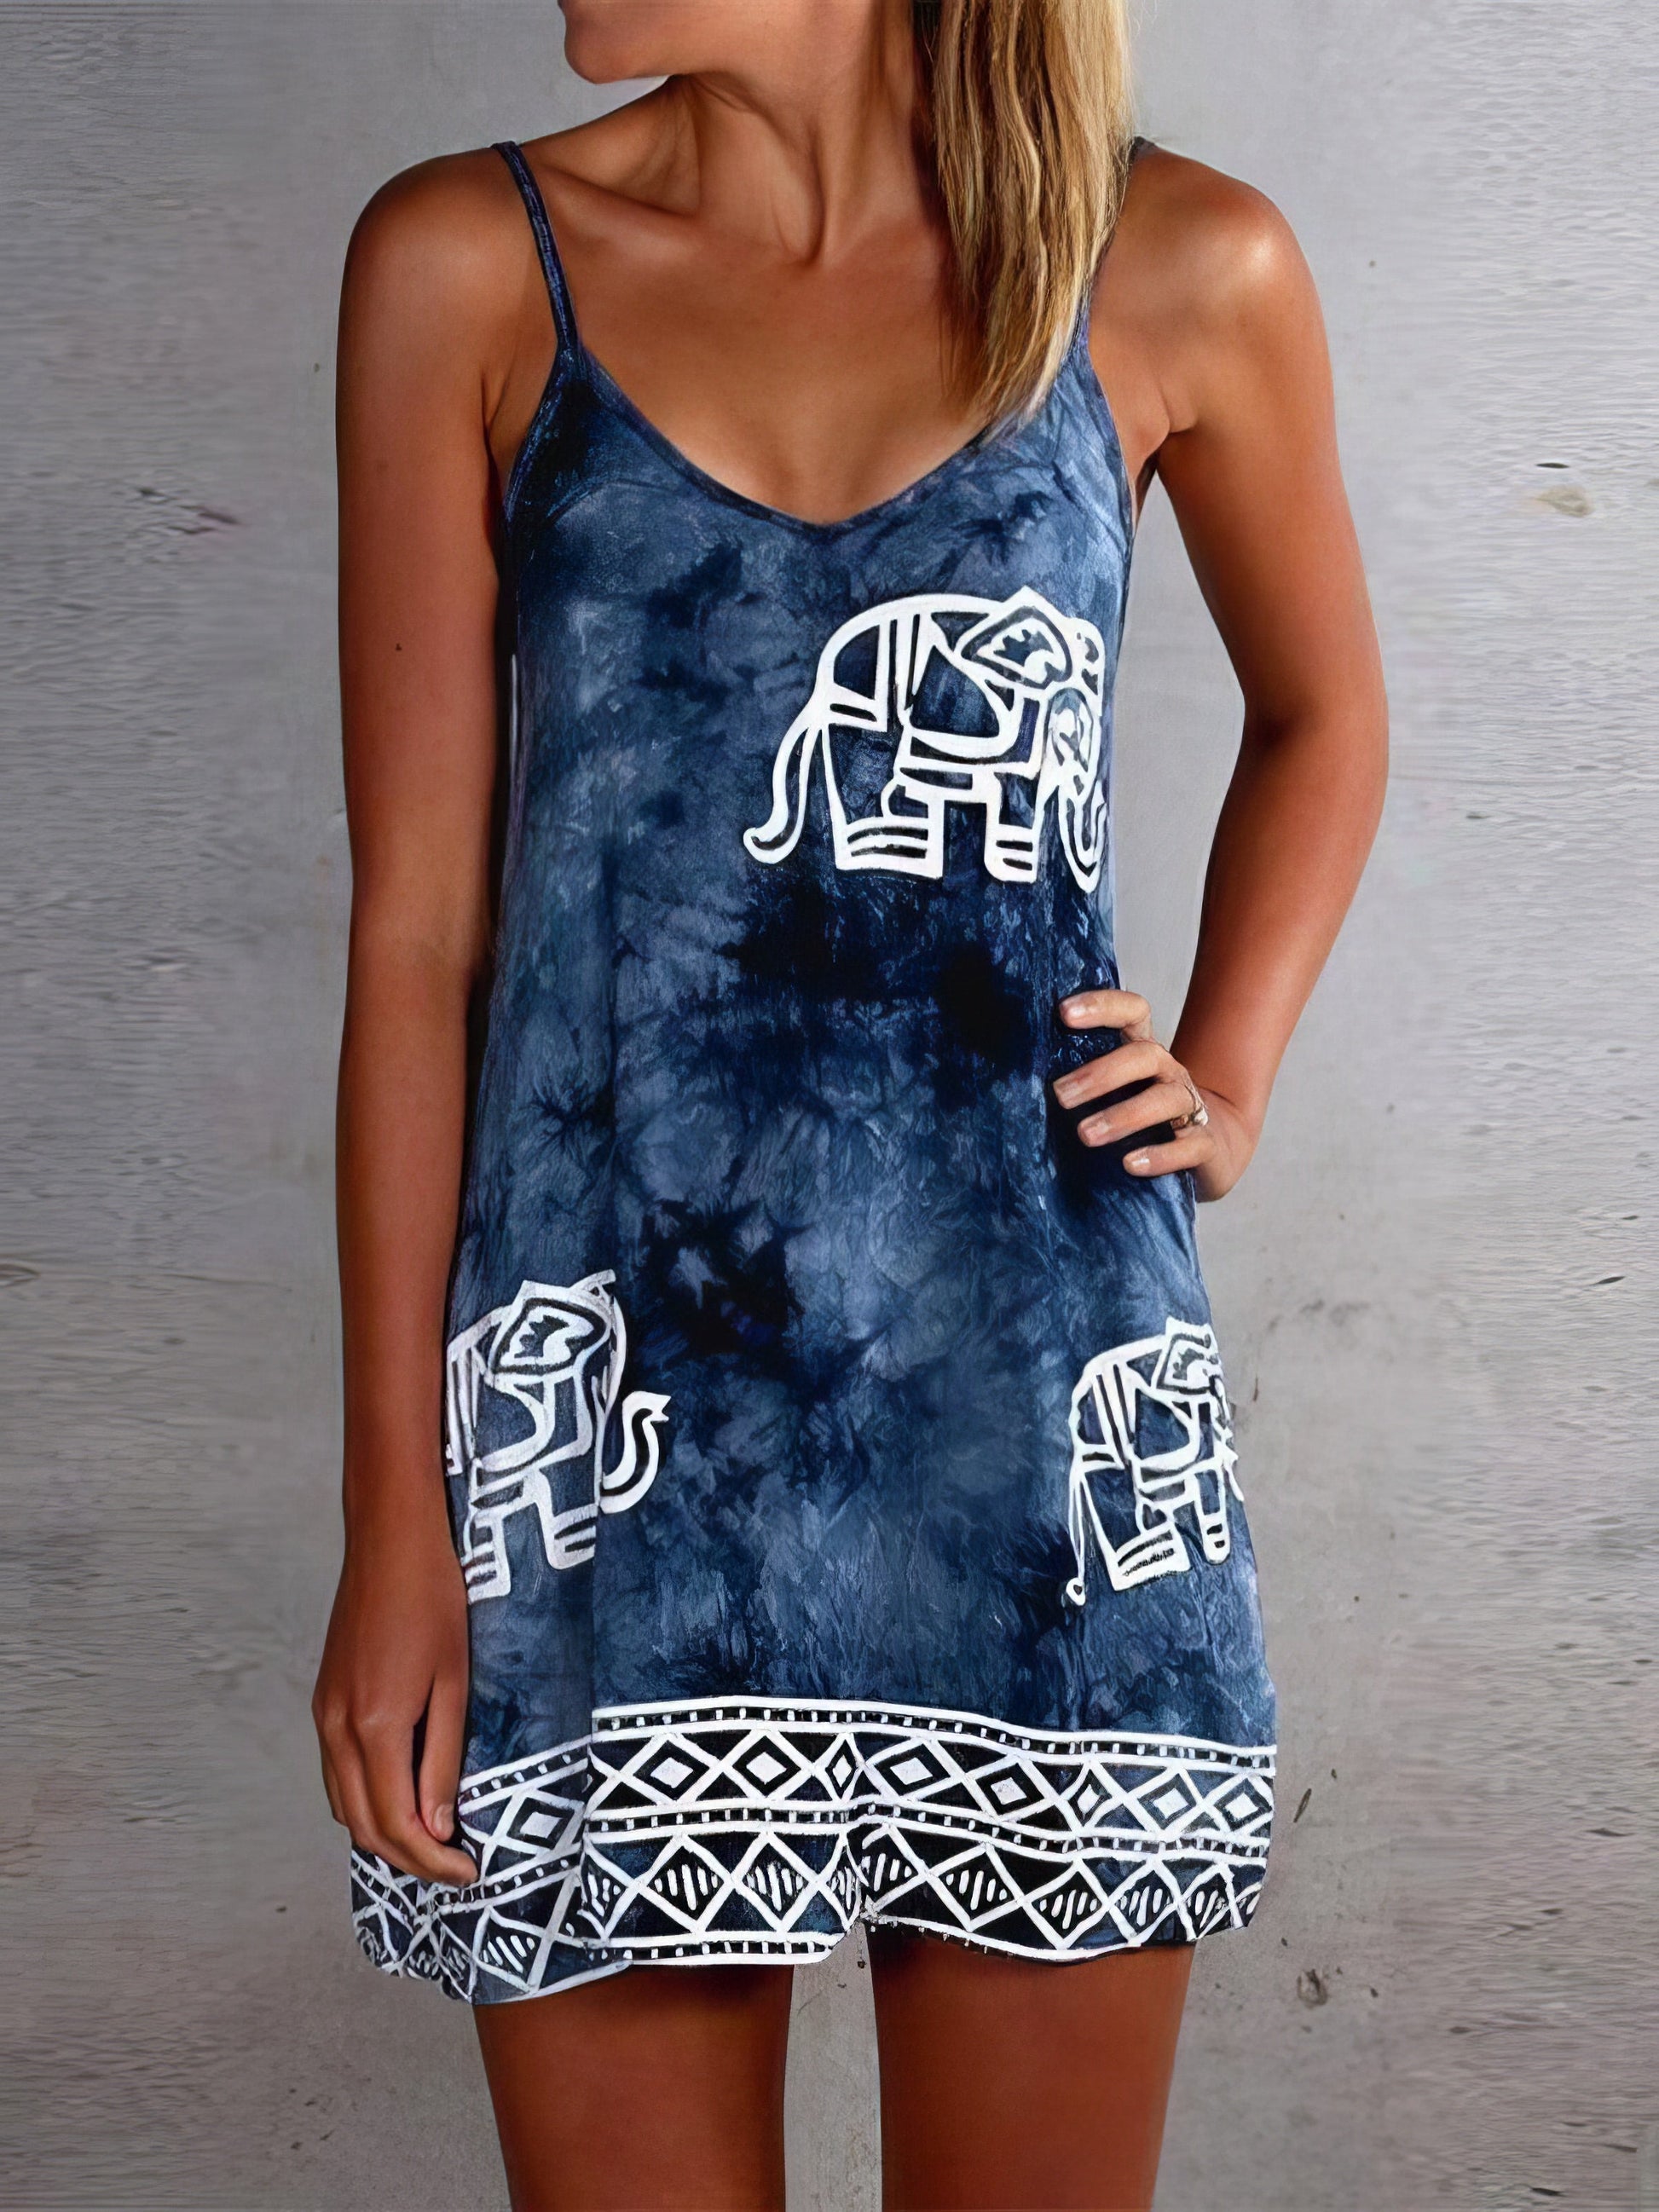 Mini Dresses - Tie-dye Elephant Print Sleeveless Skirt - MsDressly